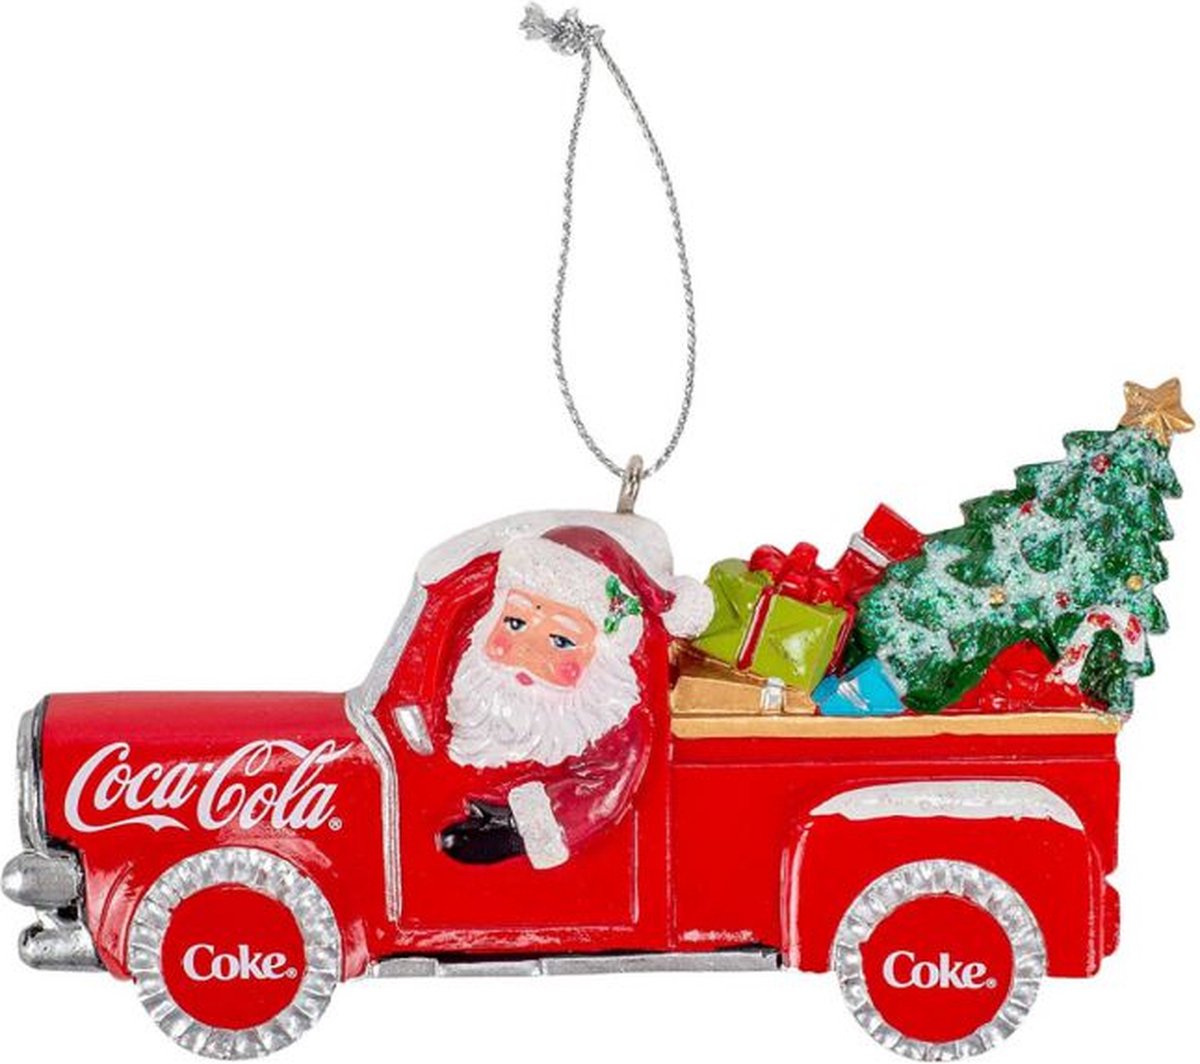 Kurt S. Adler Coca-Cola Santa Pick-Up Truck Hanging Ornament